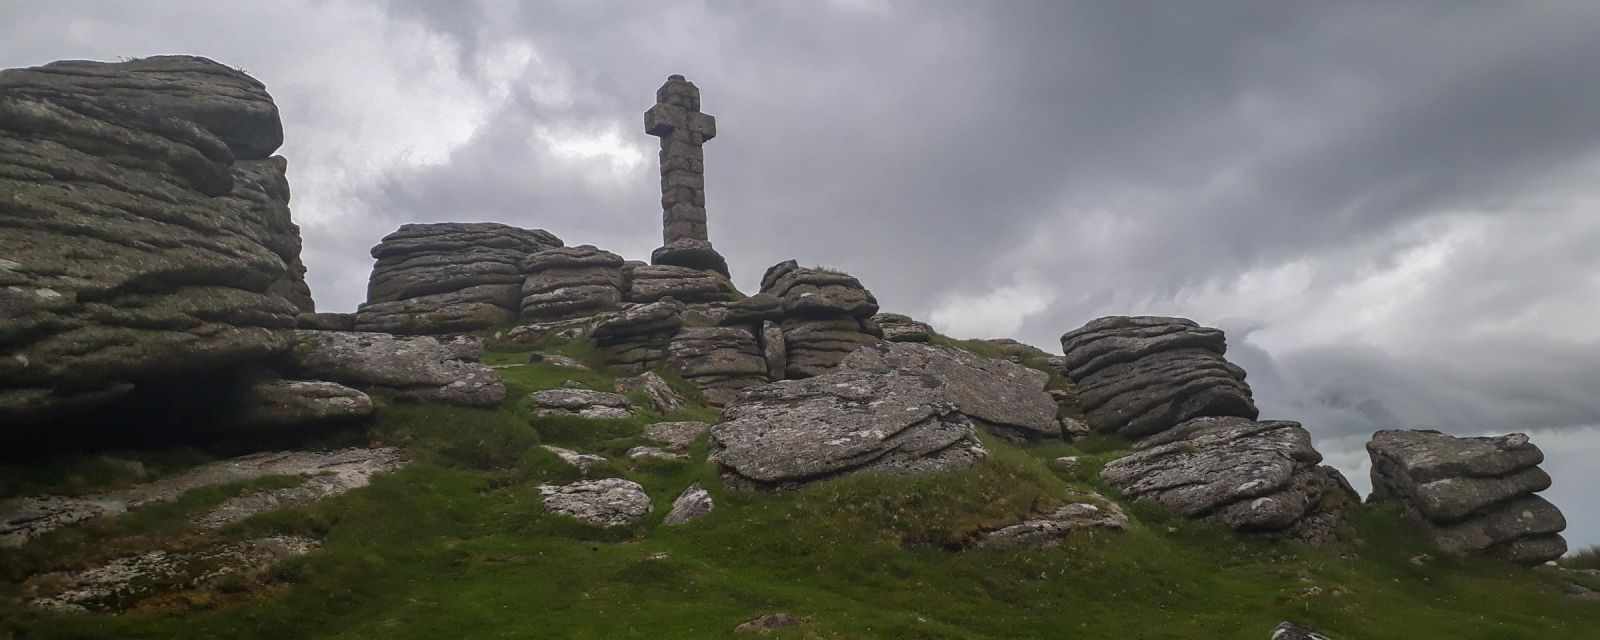 Widgery Cross and Brat Tor in the Dartmoor